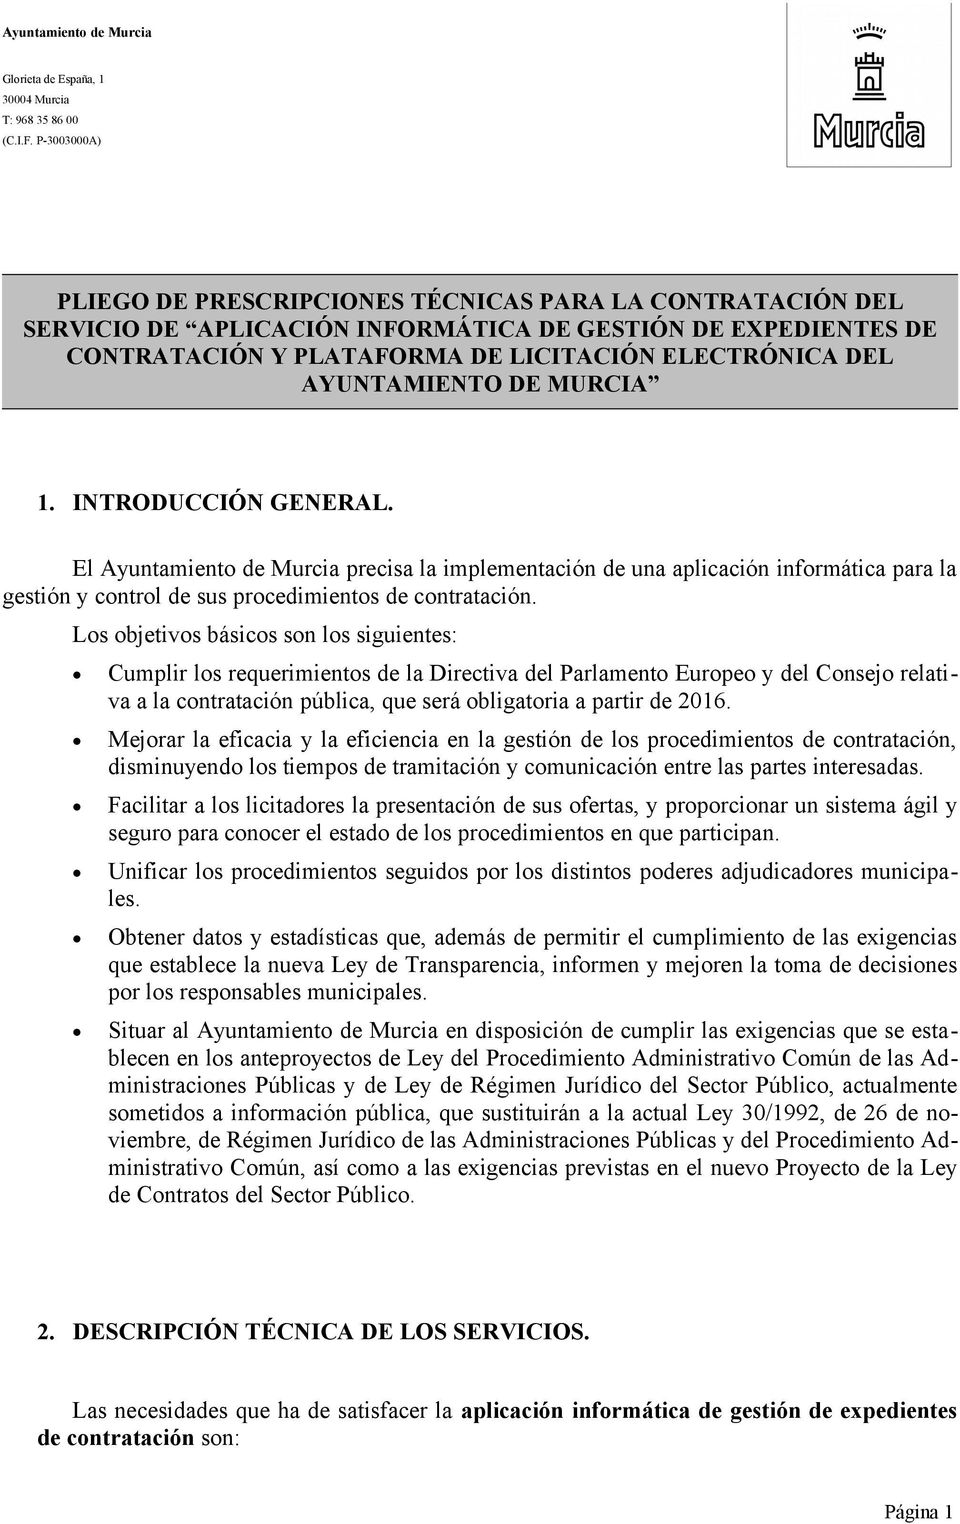 El Ayuntamient de Murcia precisa la implementación de una aplicación infrmática para la gestión y cntrl de sus prcedimients de cntratación.